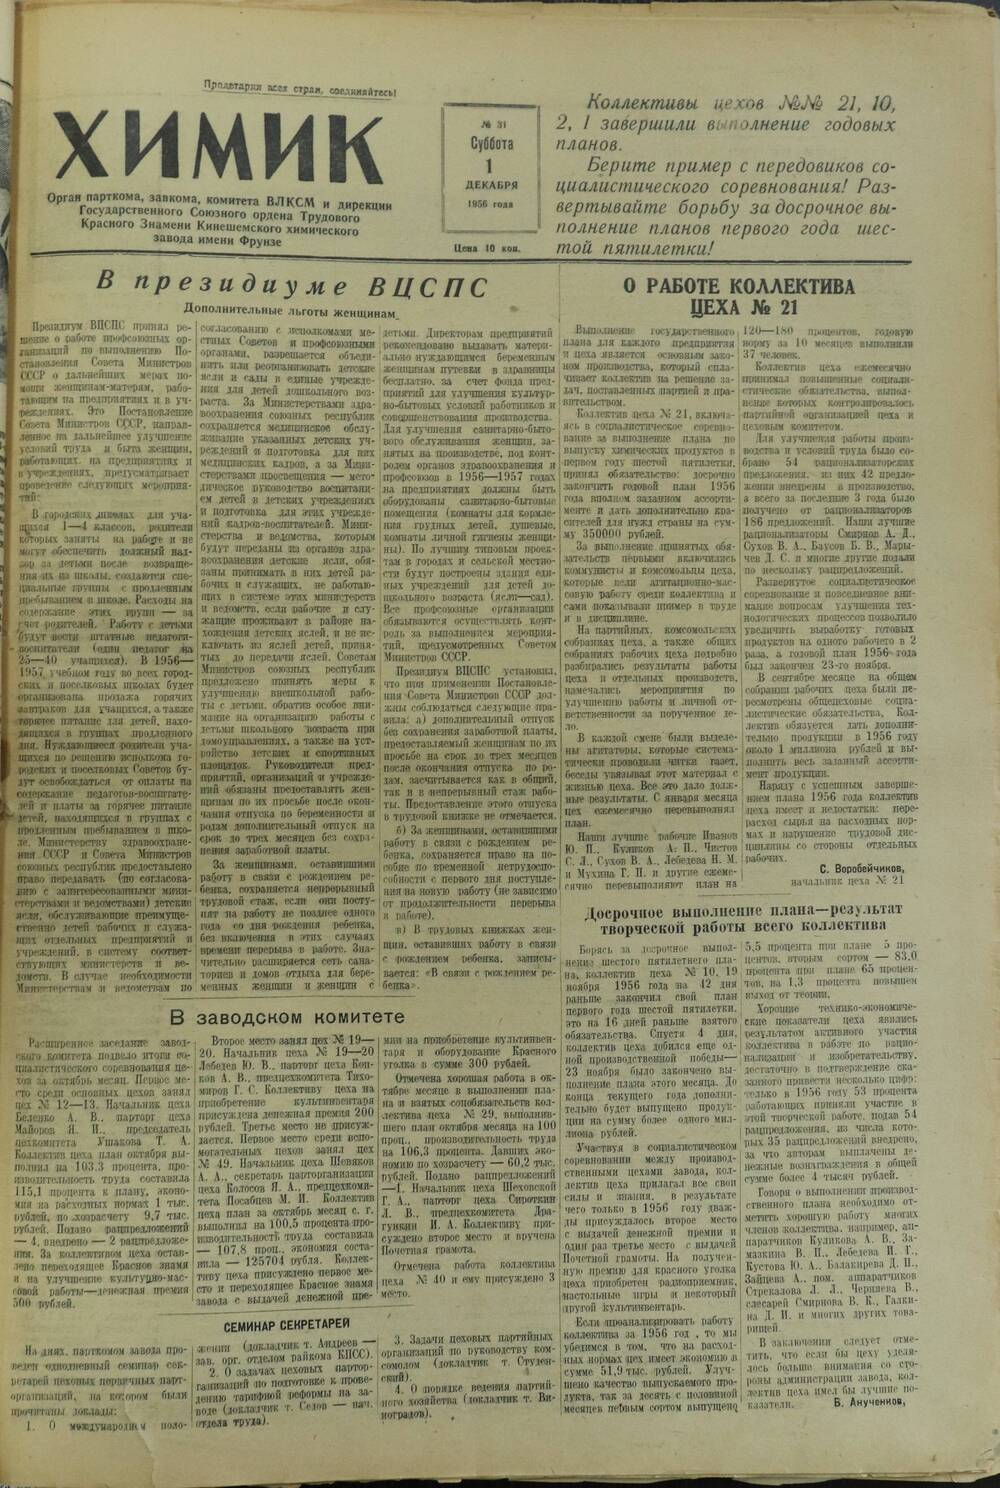 Газета «Химик» № 31 от 1 декабря 1956 года.